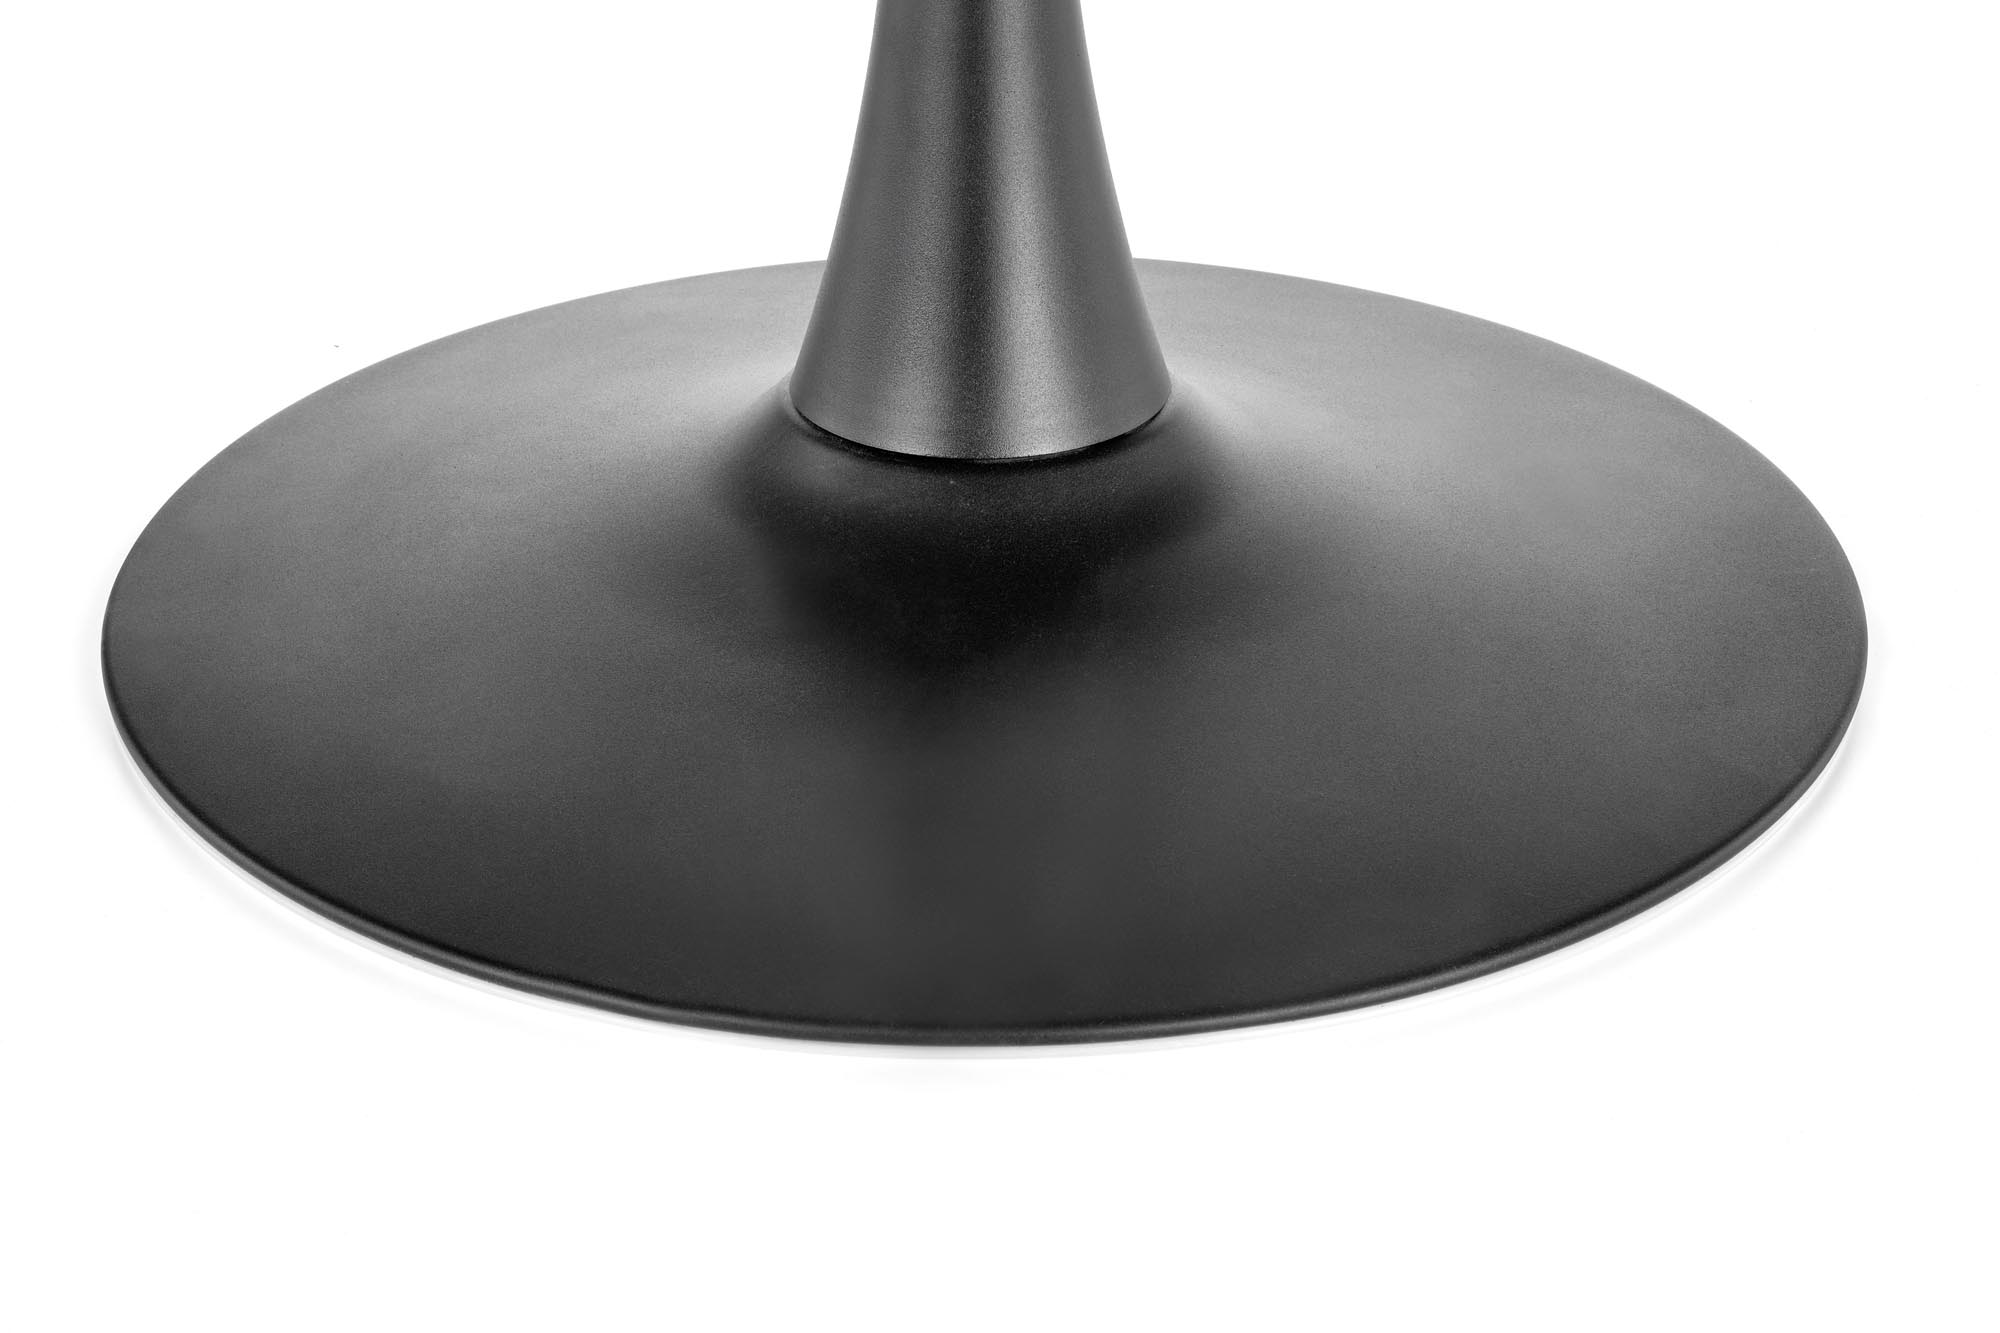 Okrúhly jedálenský stôl Carmelo 120 cm - orech / čierna Stôl do jedálne carmelo - Orech/Čierny